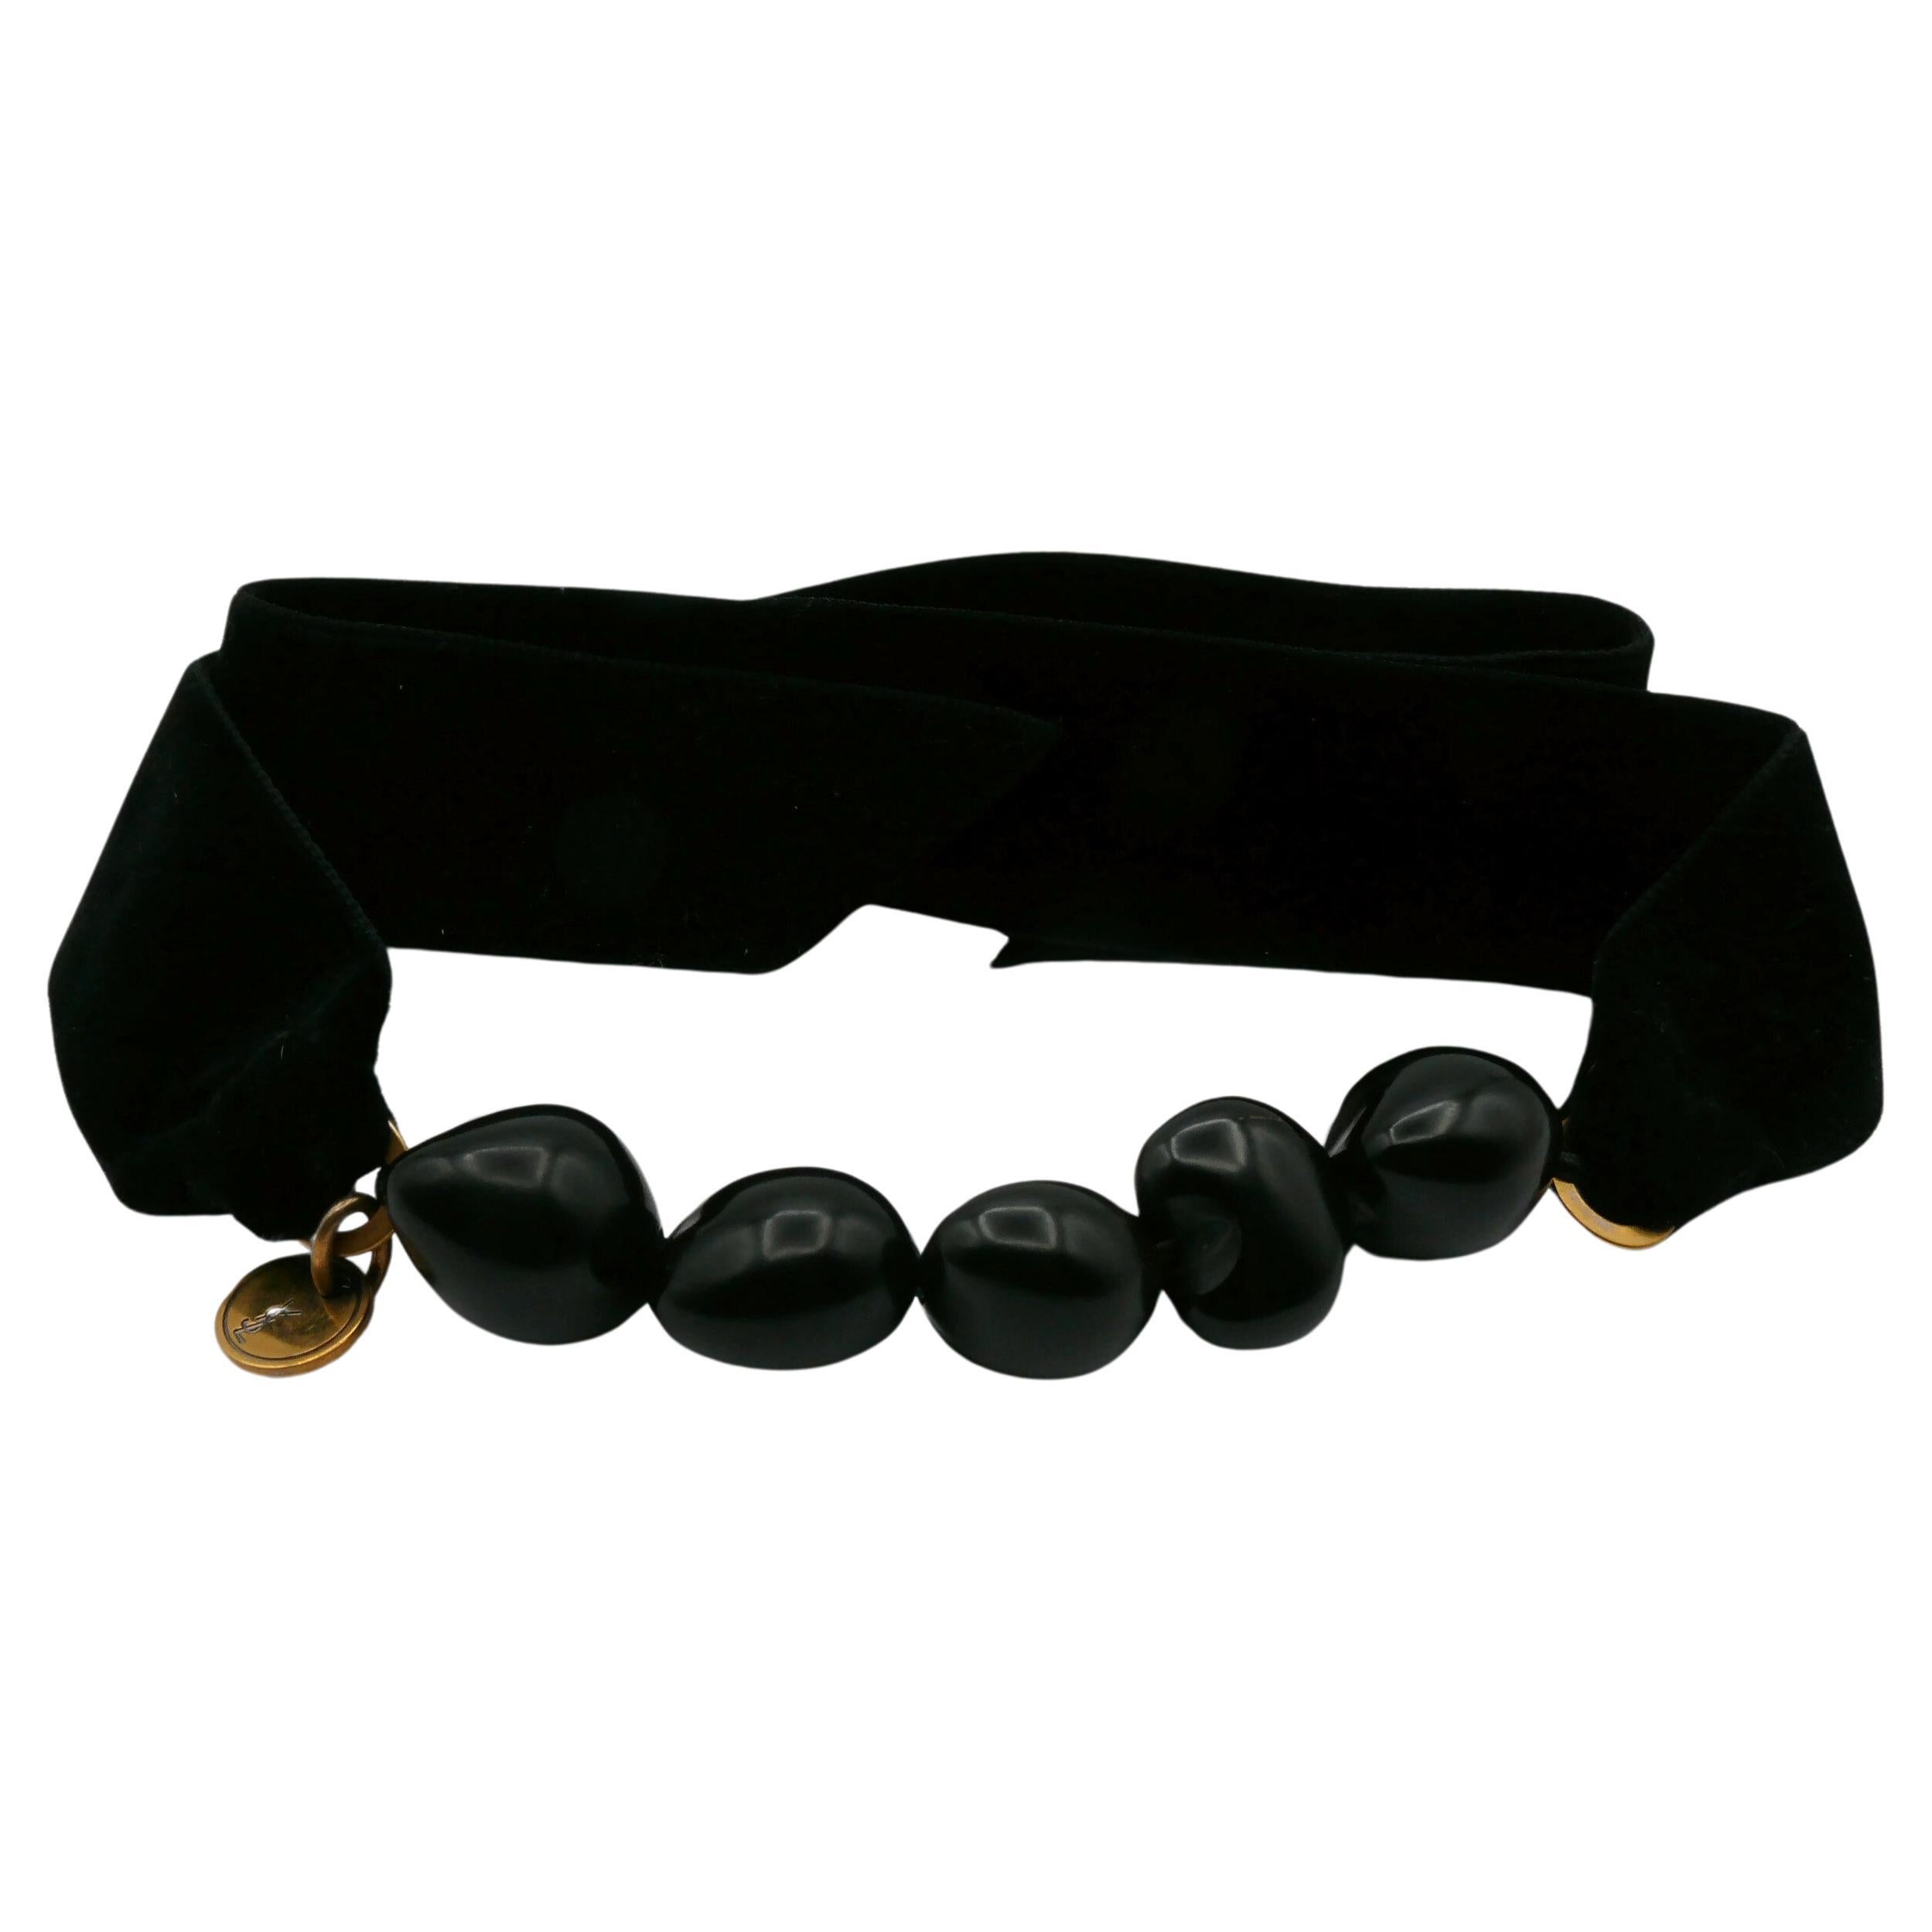 YVES SAINT LAURENT Black Resin Bead and Velvet Choker Necklace & Bracelet For Sale